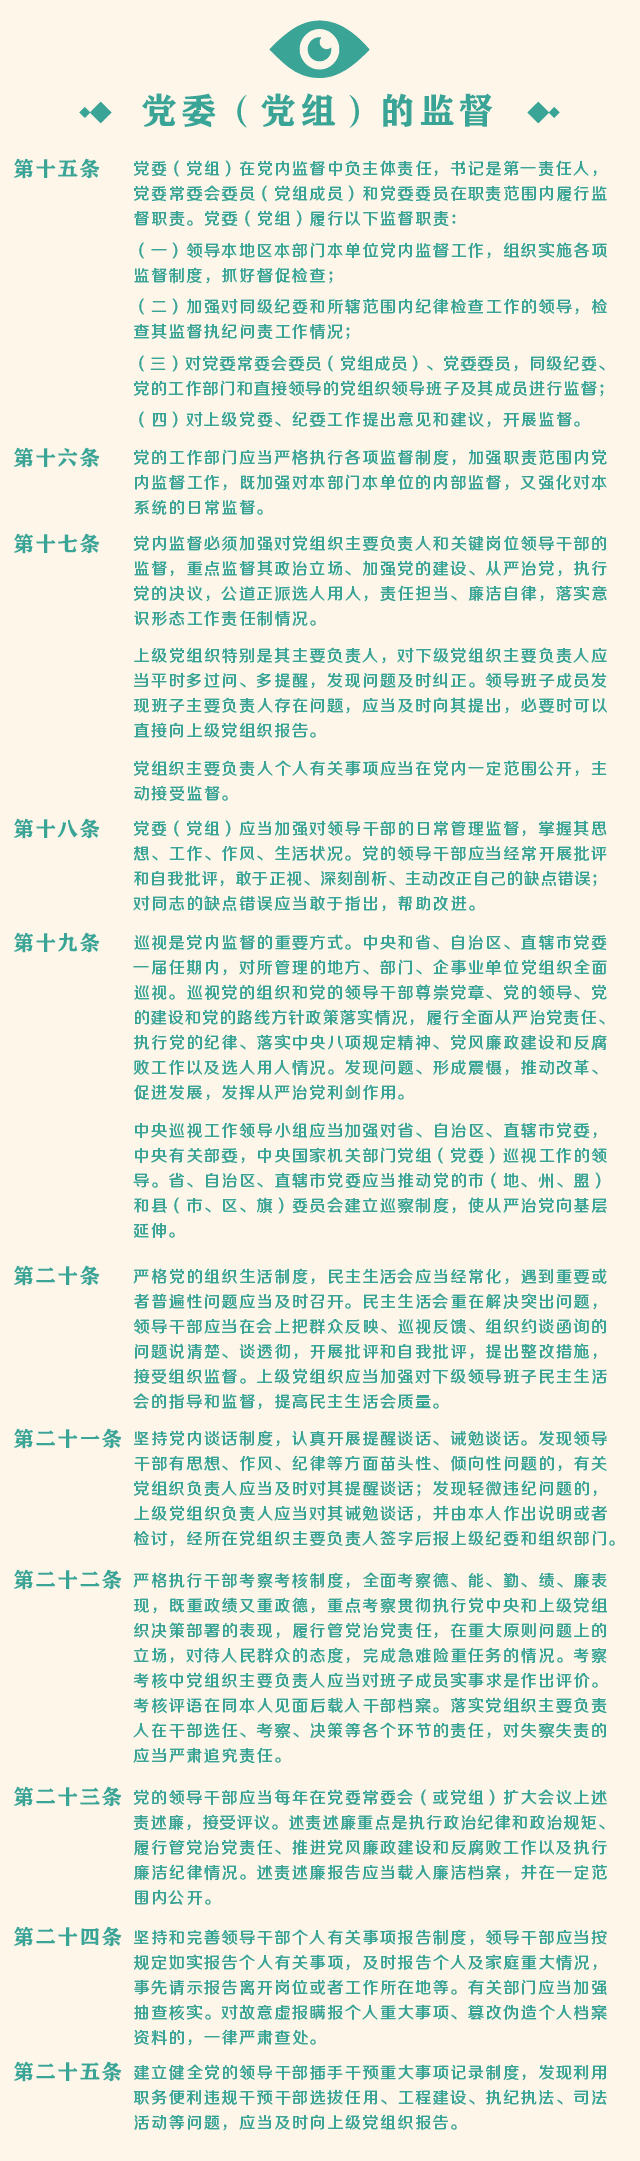 一图读懂中国共产党党内监督条例